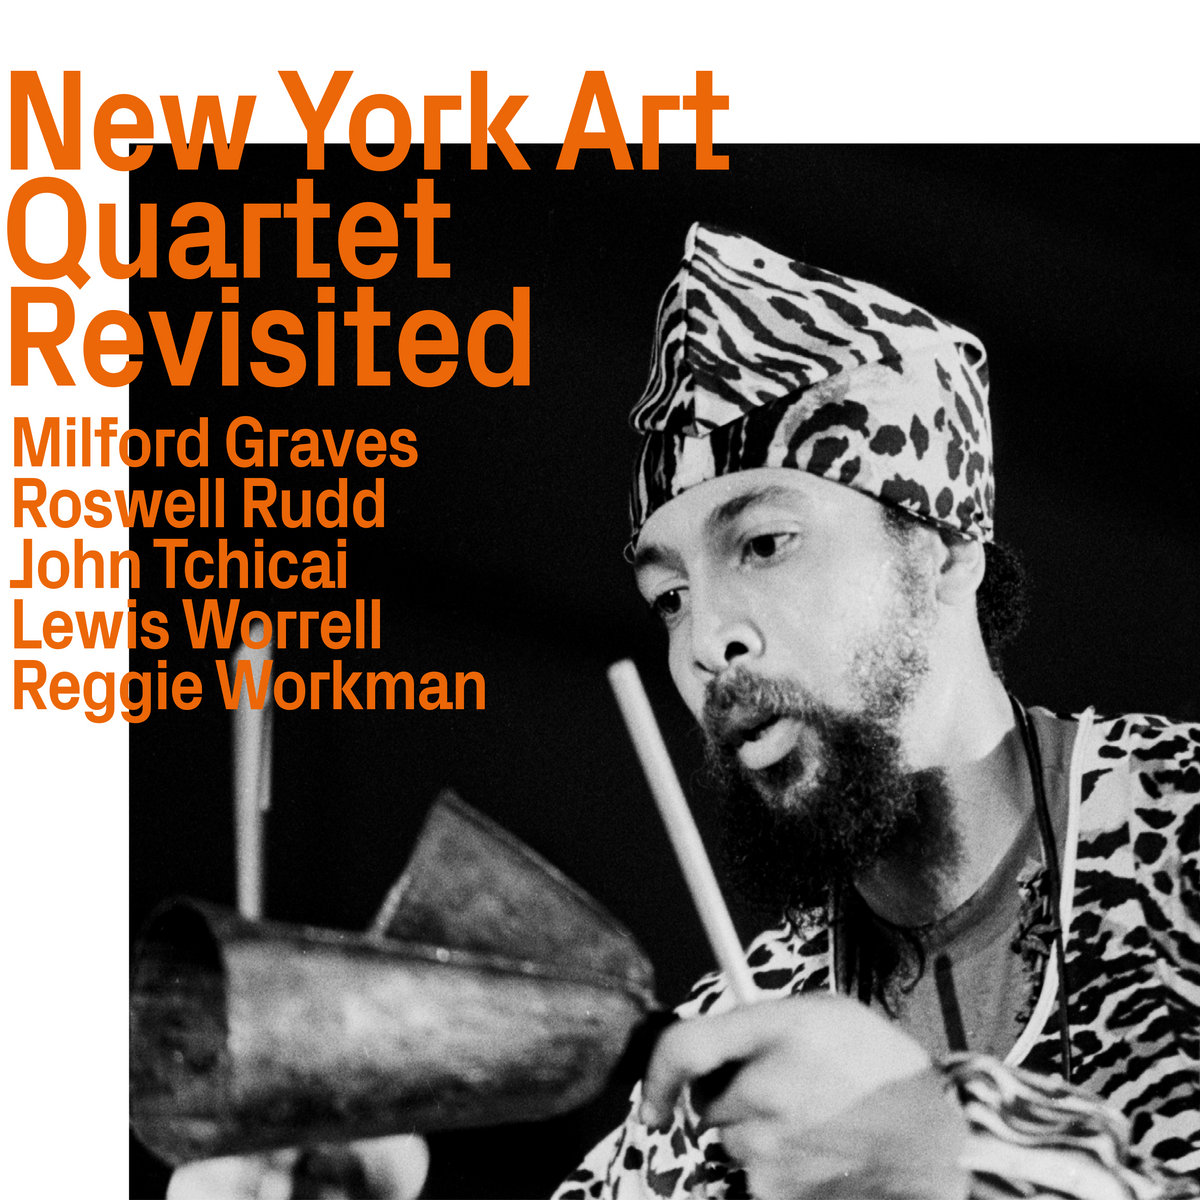 New York Art Quartet, Revisited